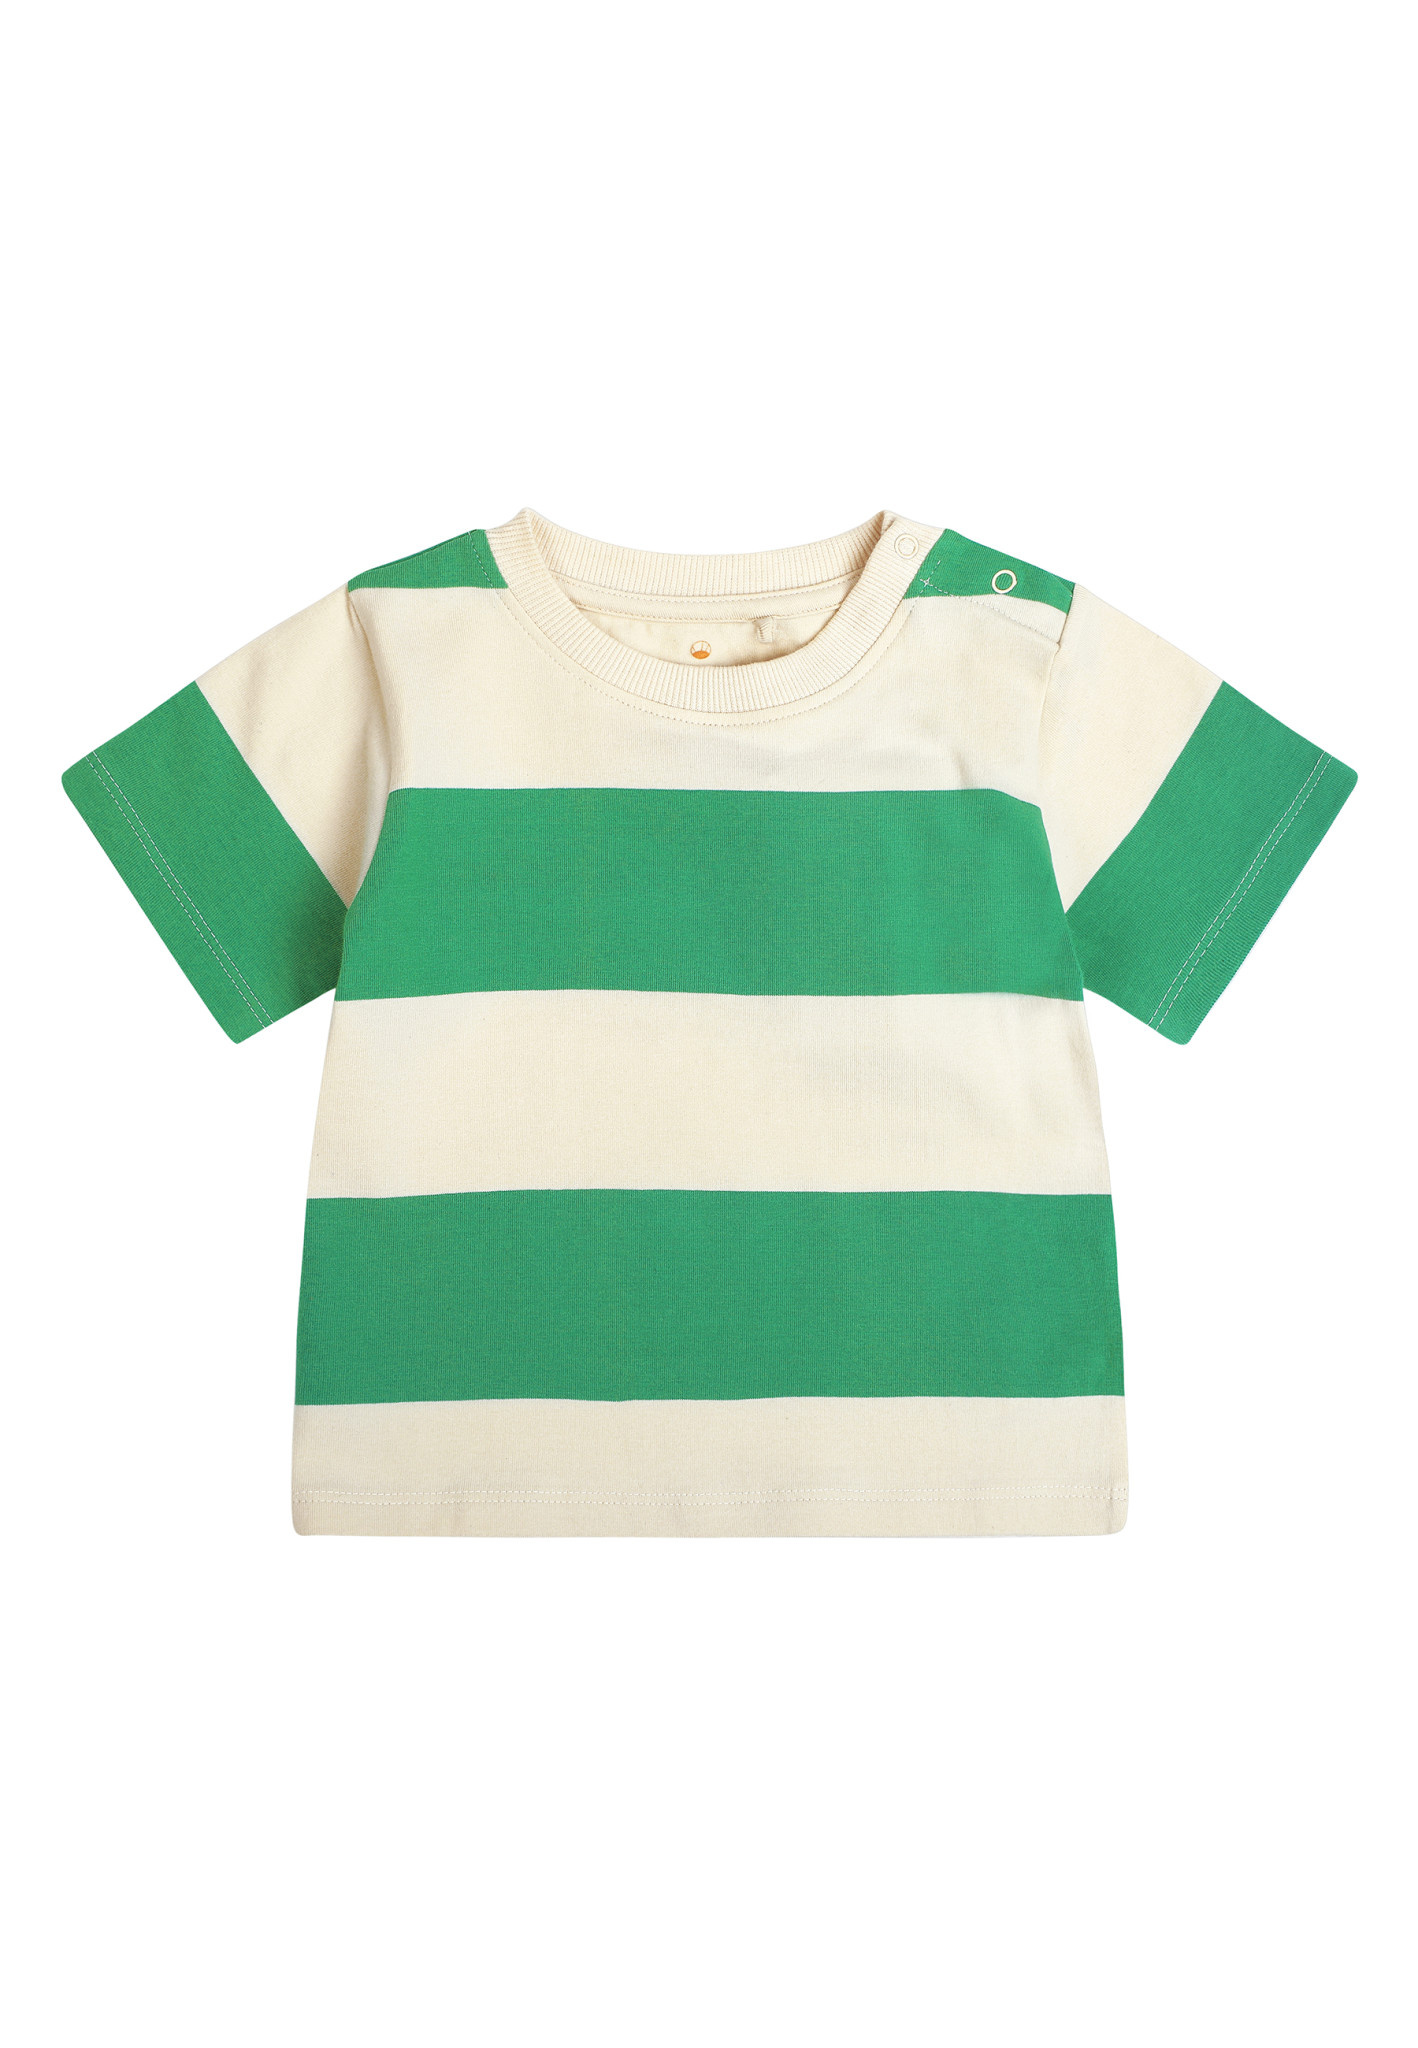 Jea T-shirt Bright Green TNS2019-1